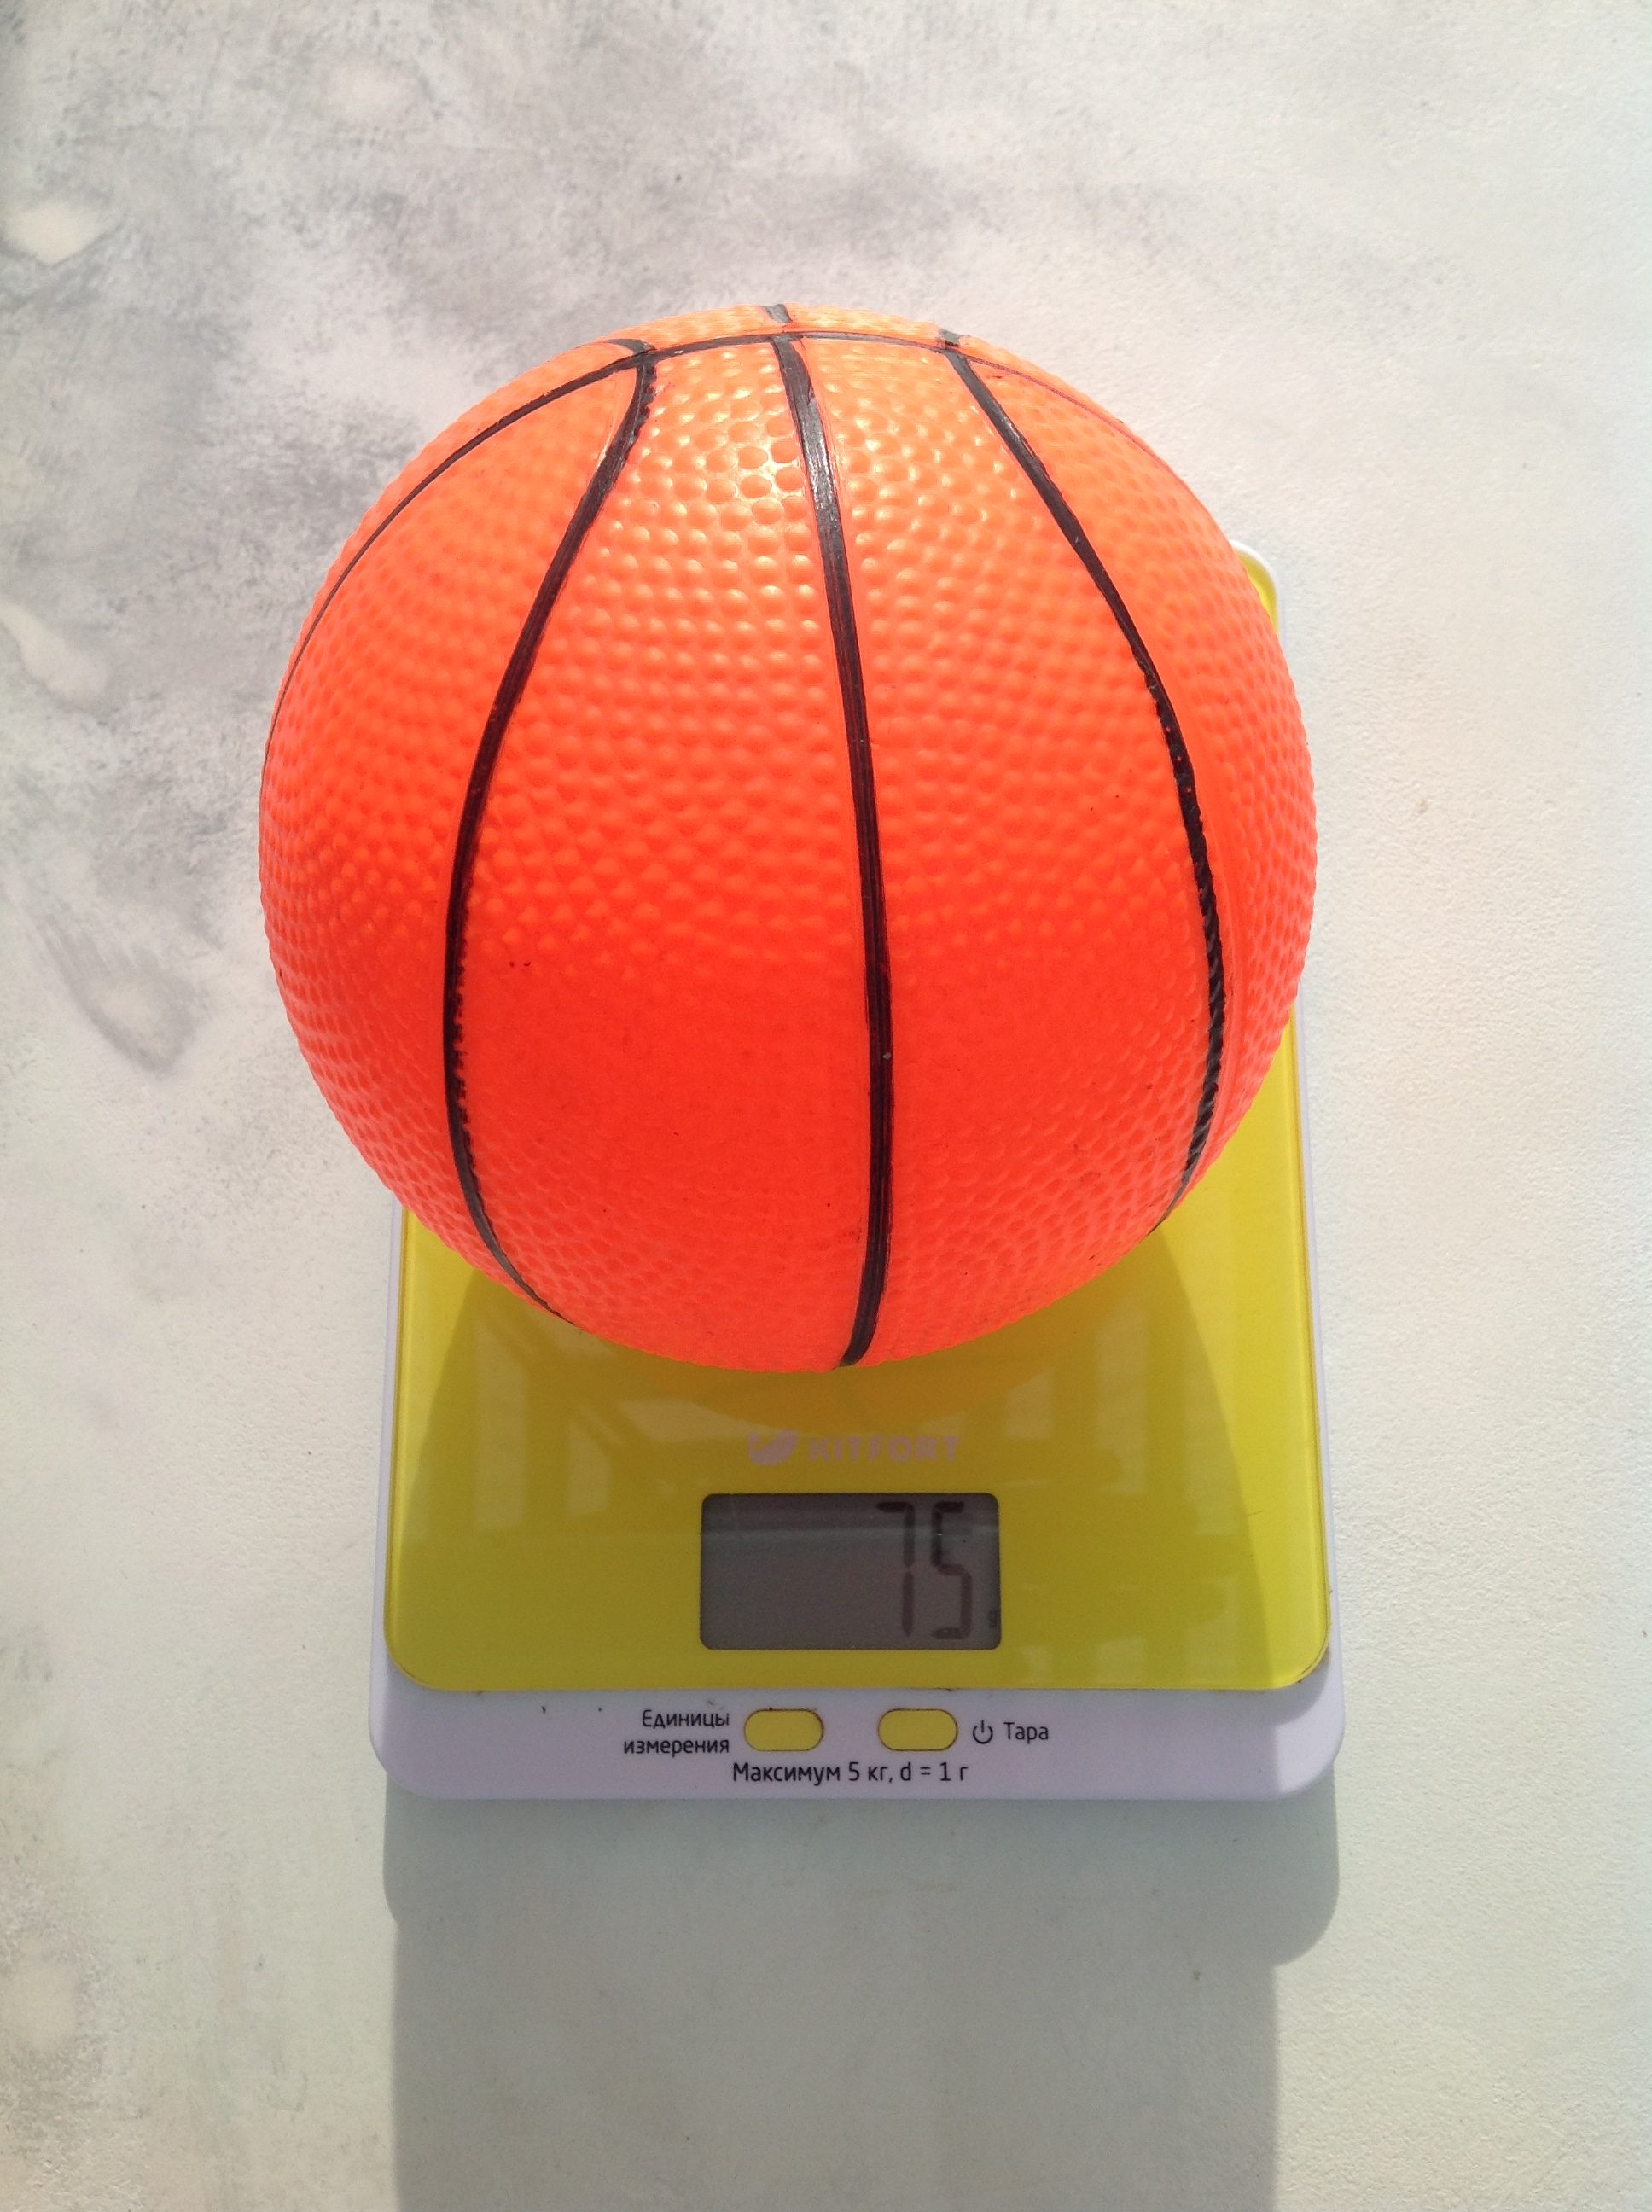 Koliko tehta otroška košarkarska žoga?